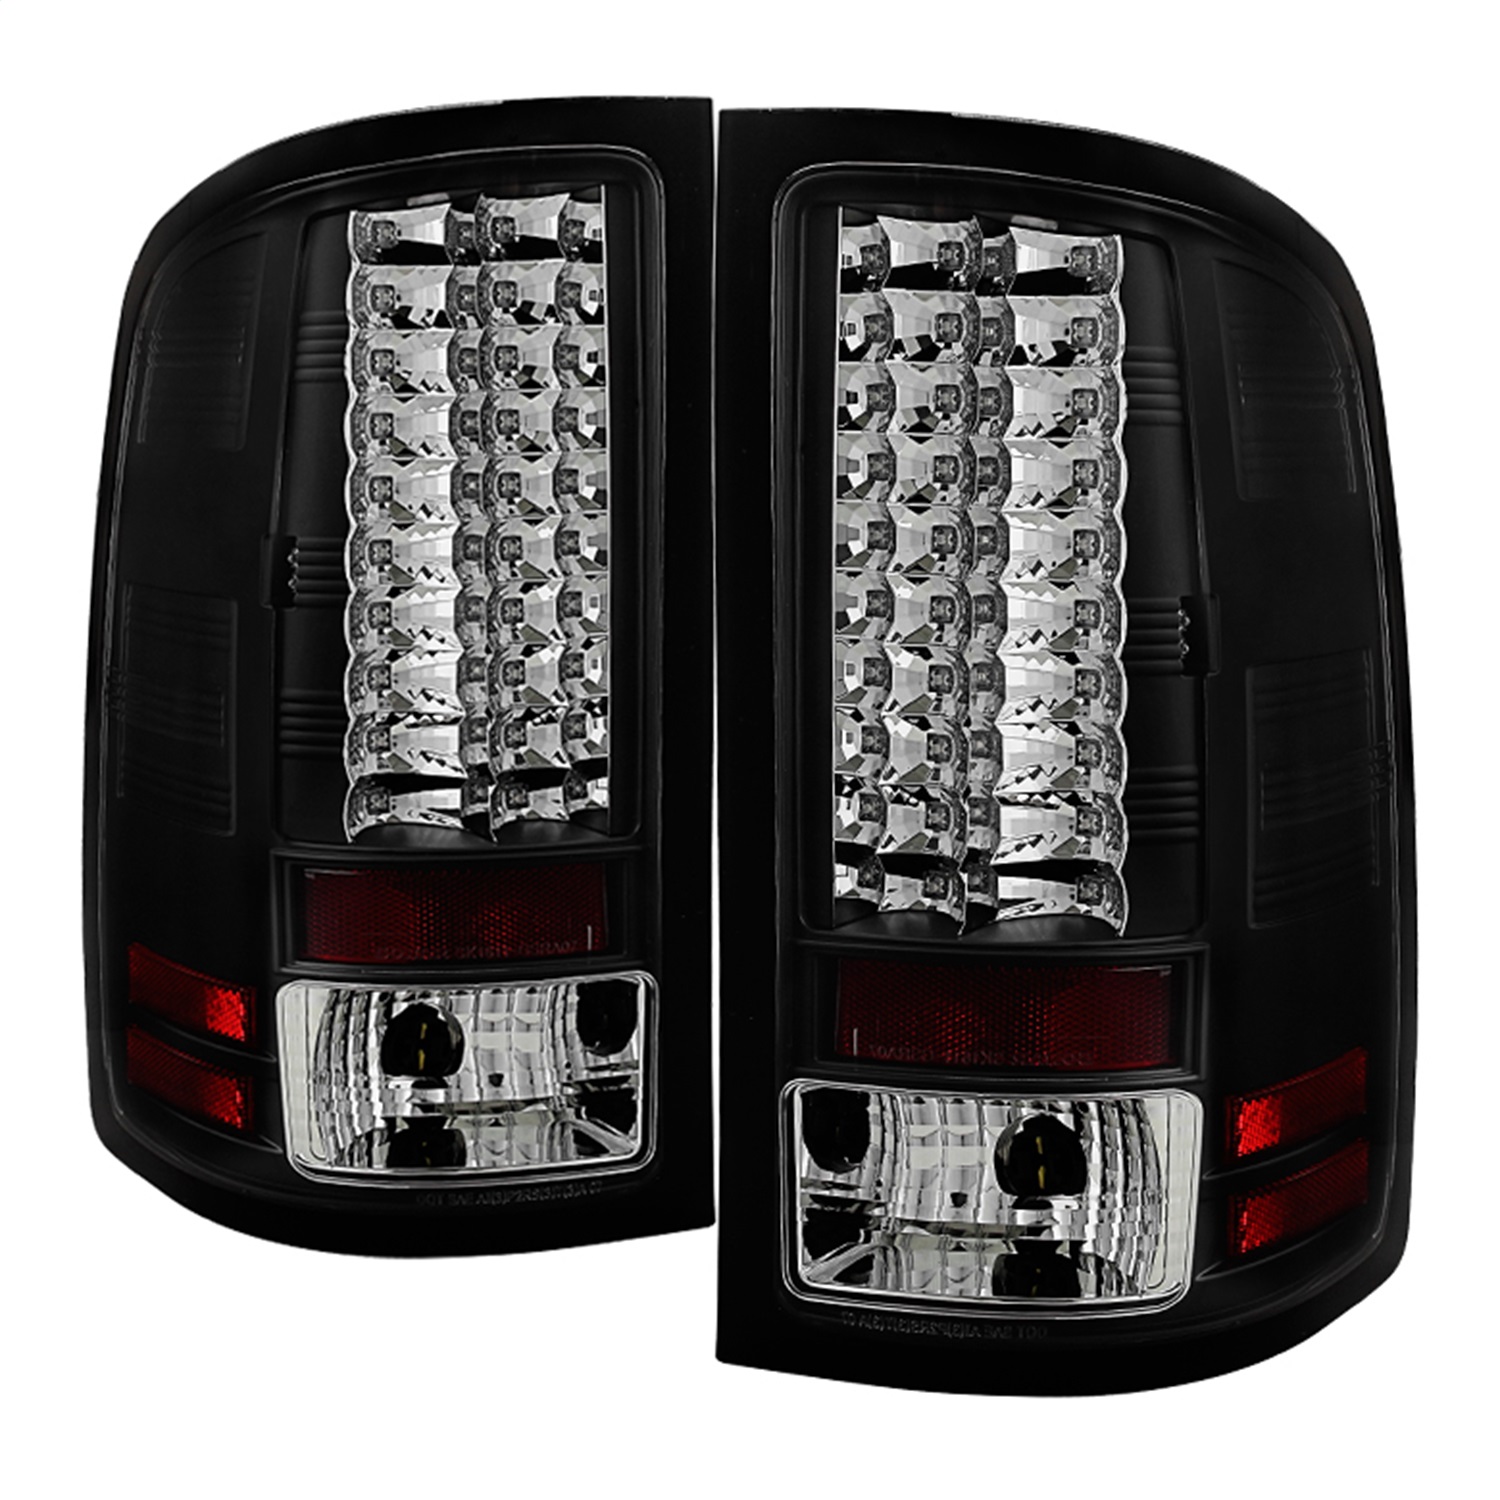 Spyder Auto 5014948 LED Tail Lights